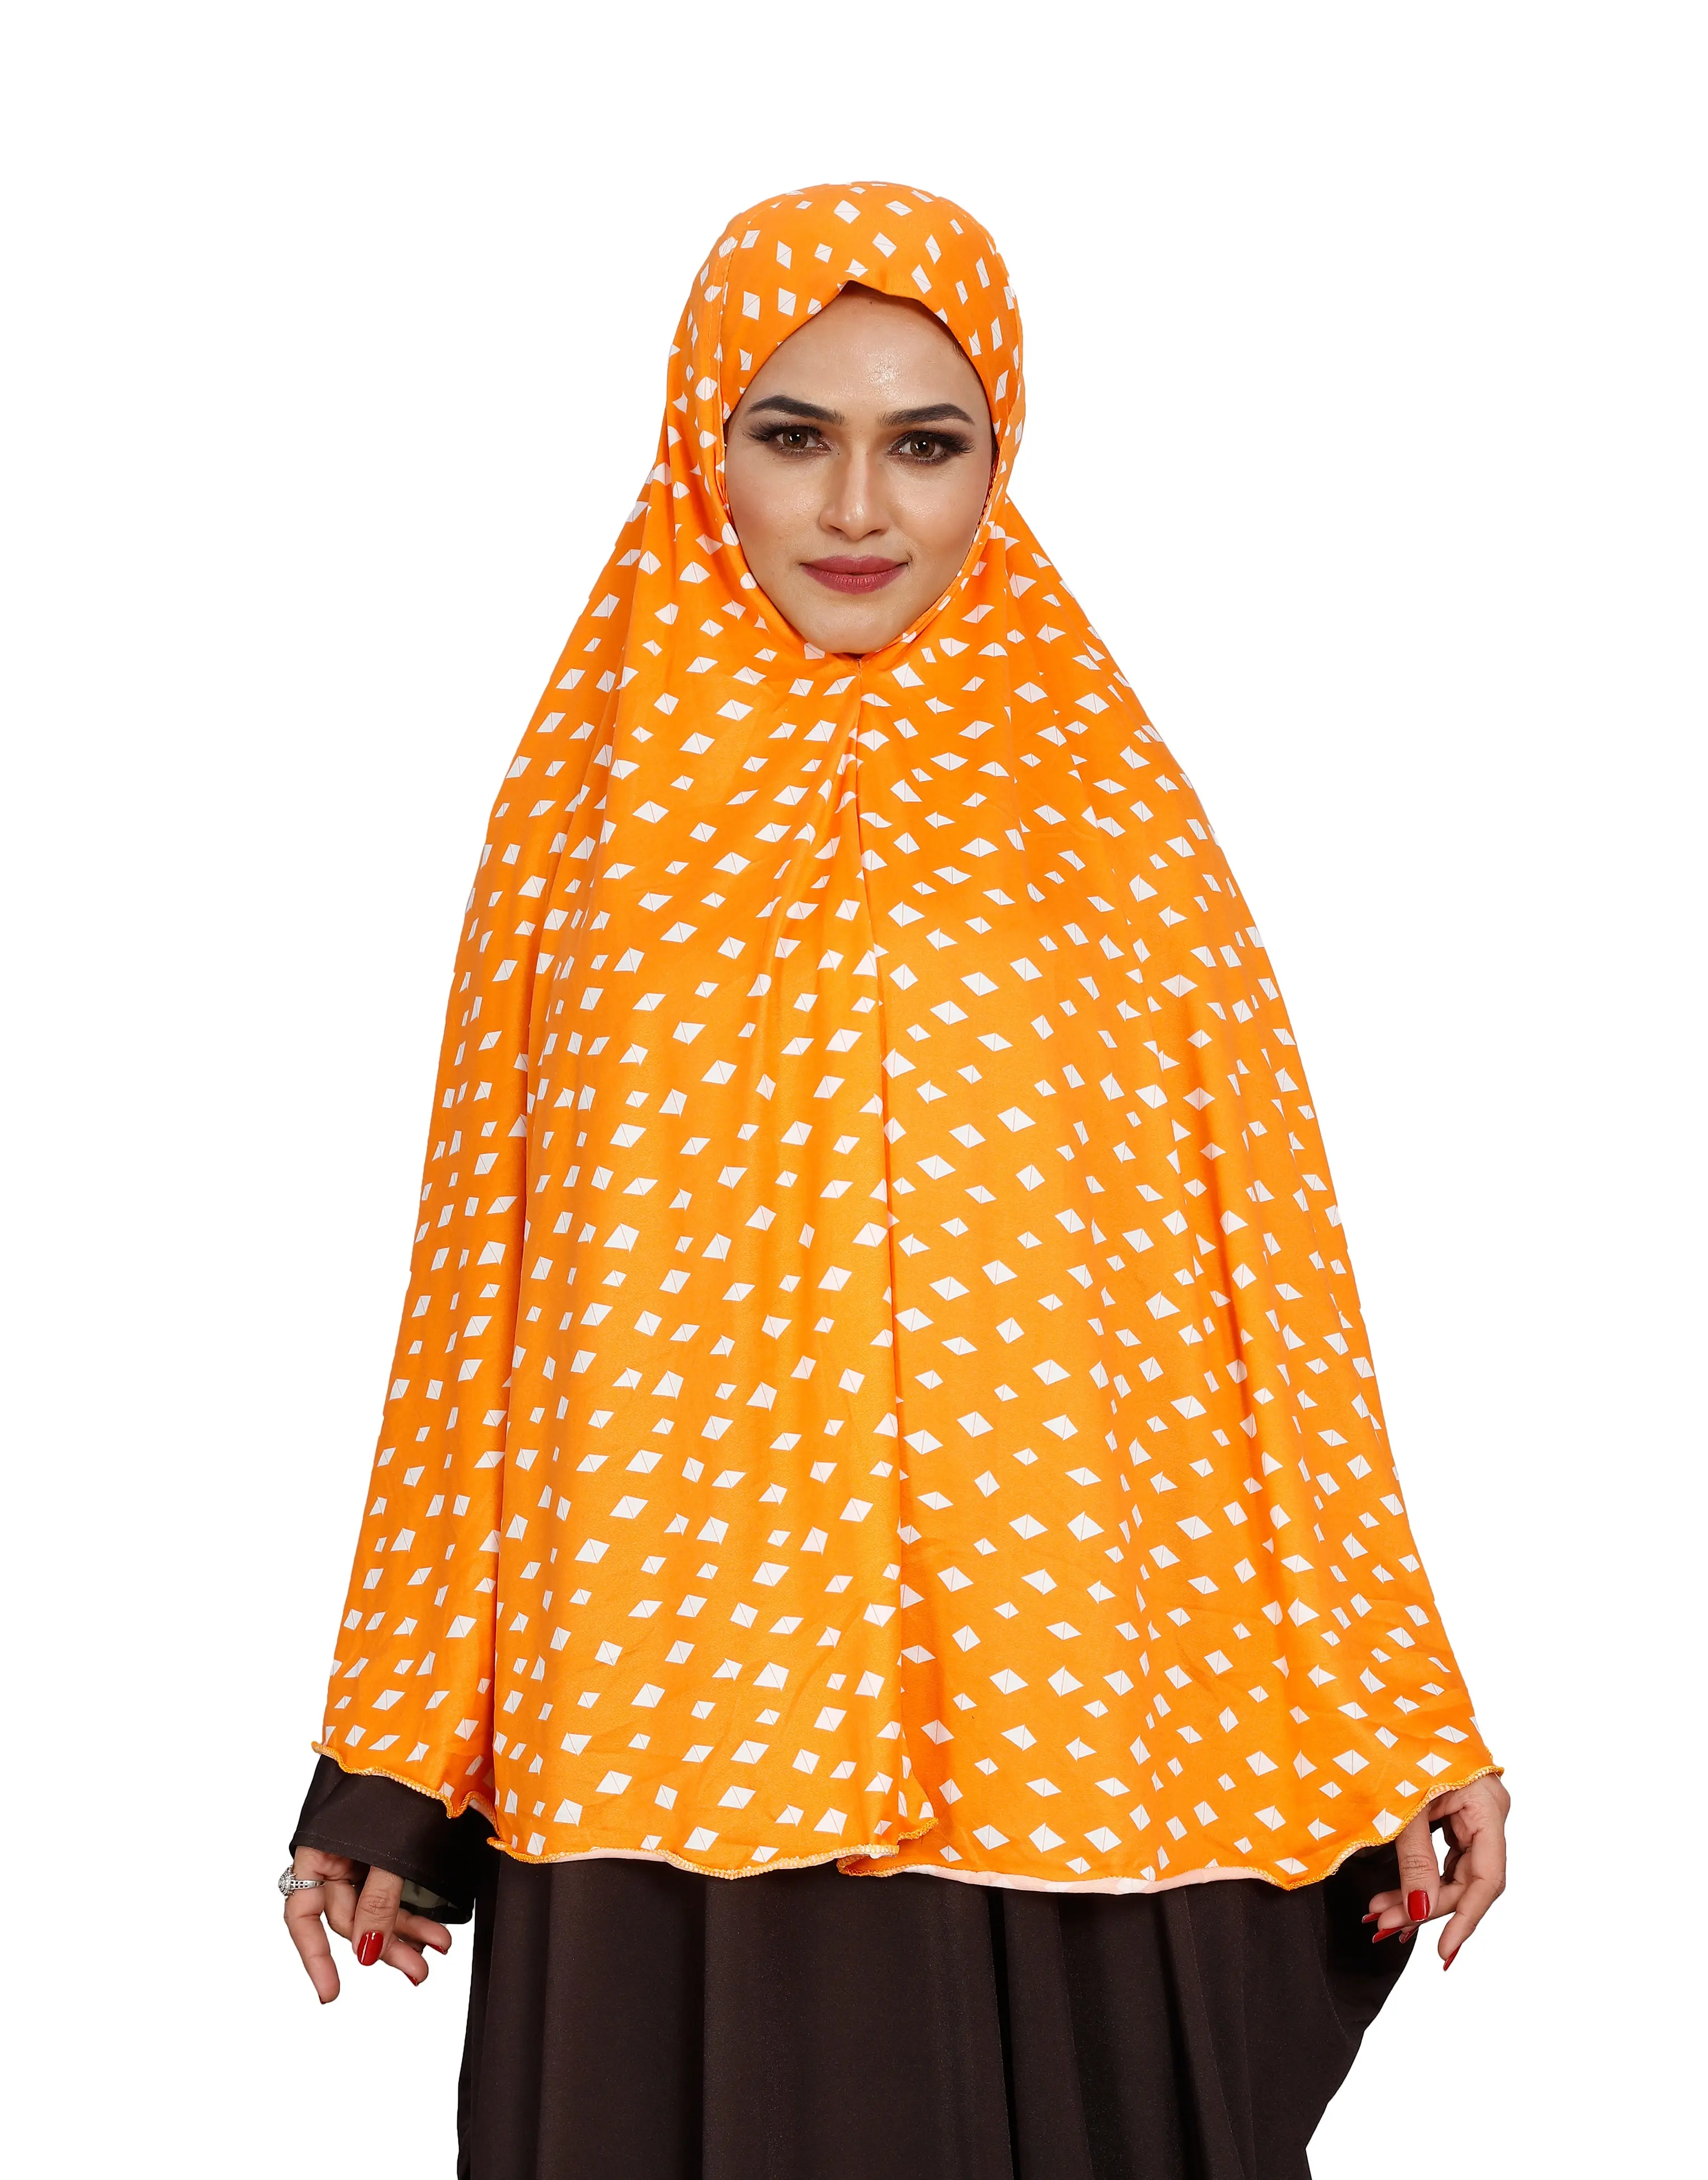 สวดมนต์ใหม่MakhnaฮิญาบยาวFlairsผู้หญิงอิสลามมุสลิมสวมออกแบบ2021